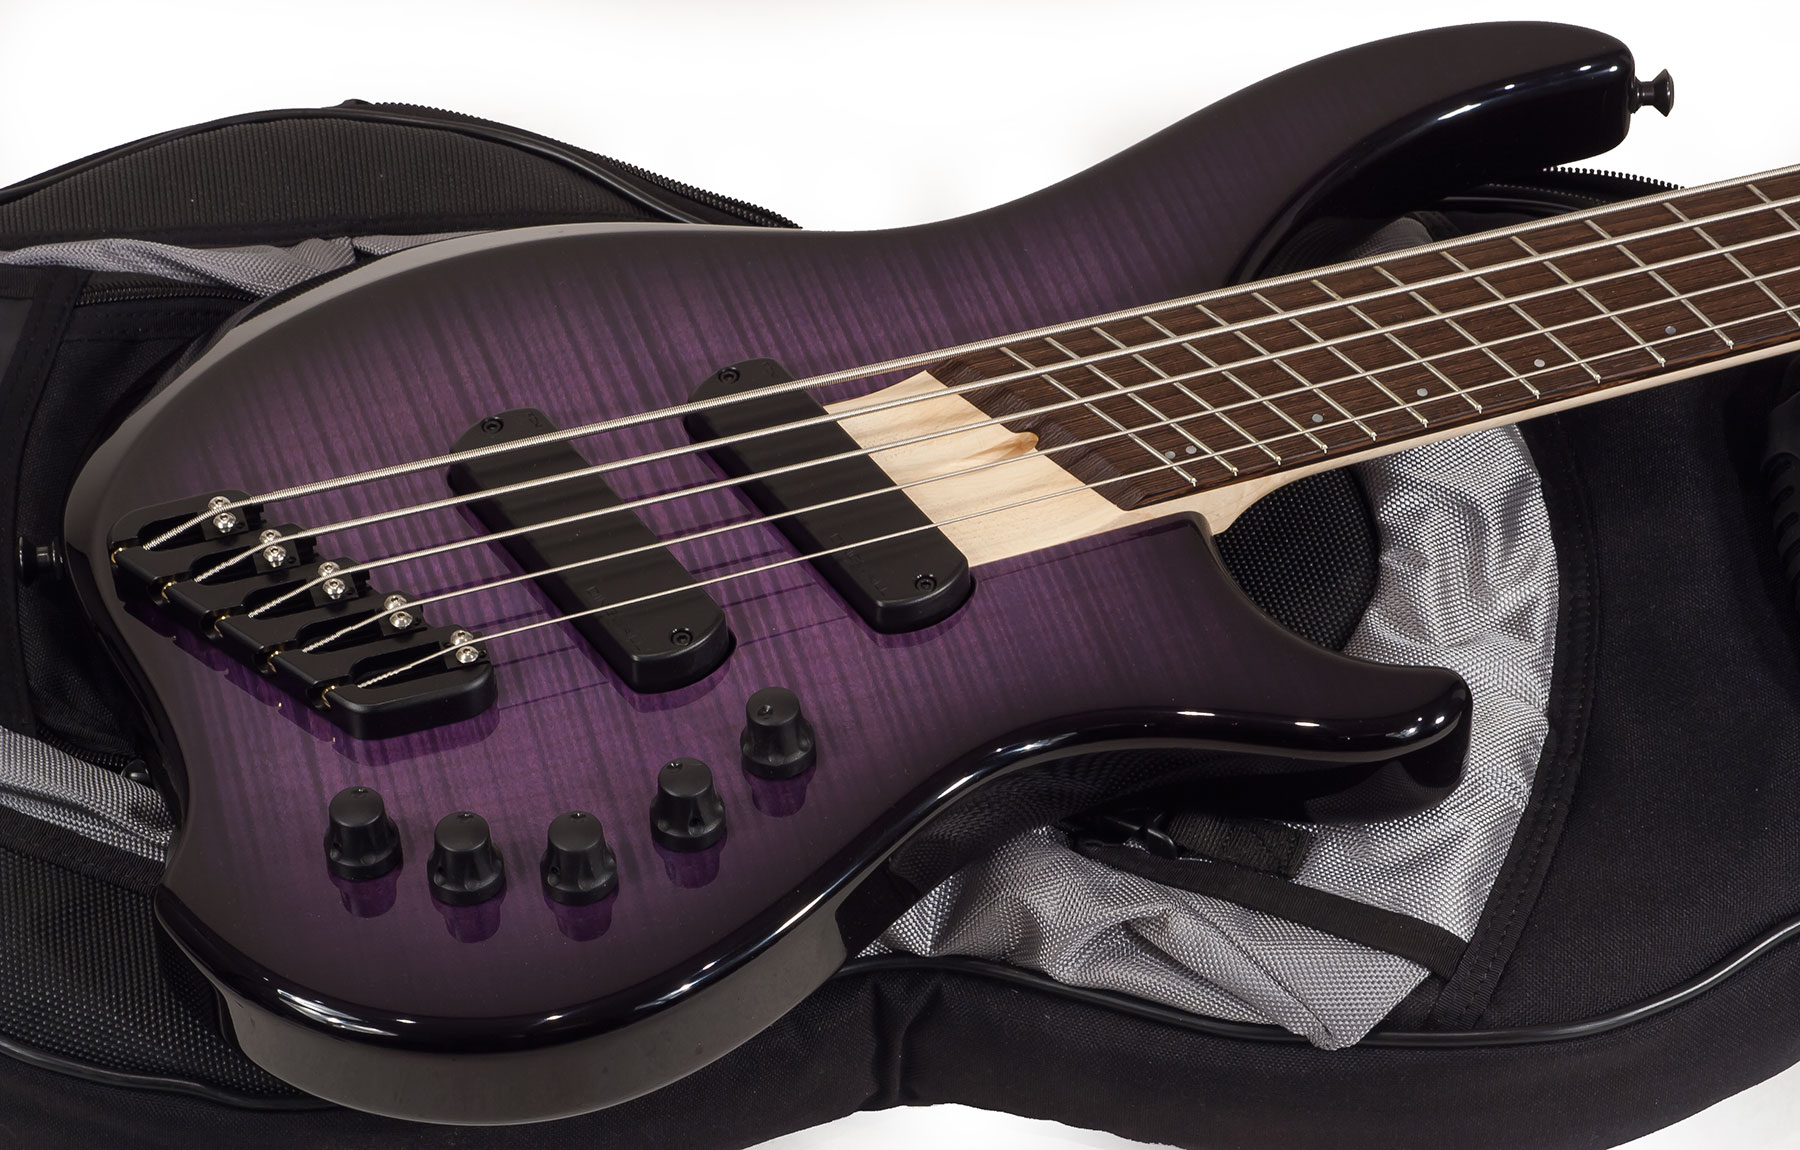 Dingwall Afterburner I 5 2-pickups Wen +housse - Purple Blackburst - Solid body electric bass - Variation 1